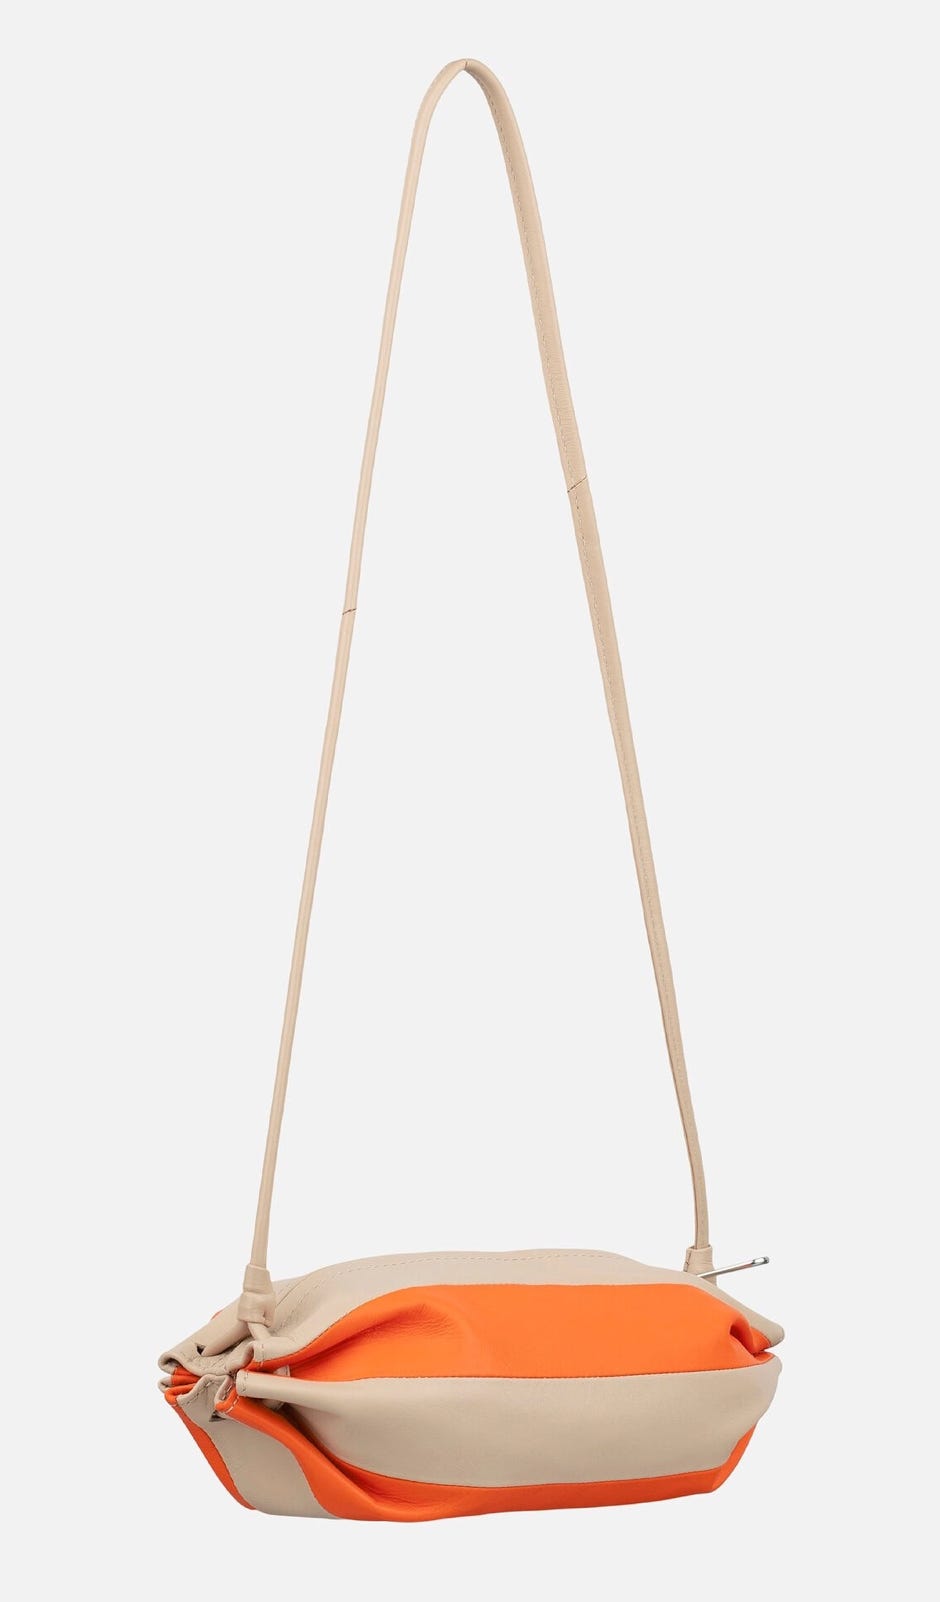 Pikku Karla Multi shoulder bag – 9 x 27 x 14 cm – twocolor leather